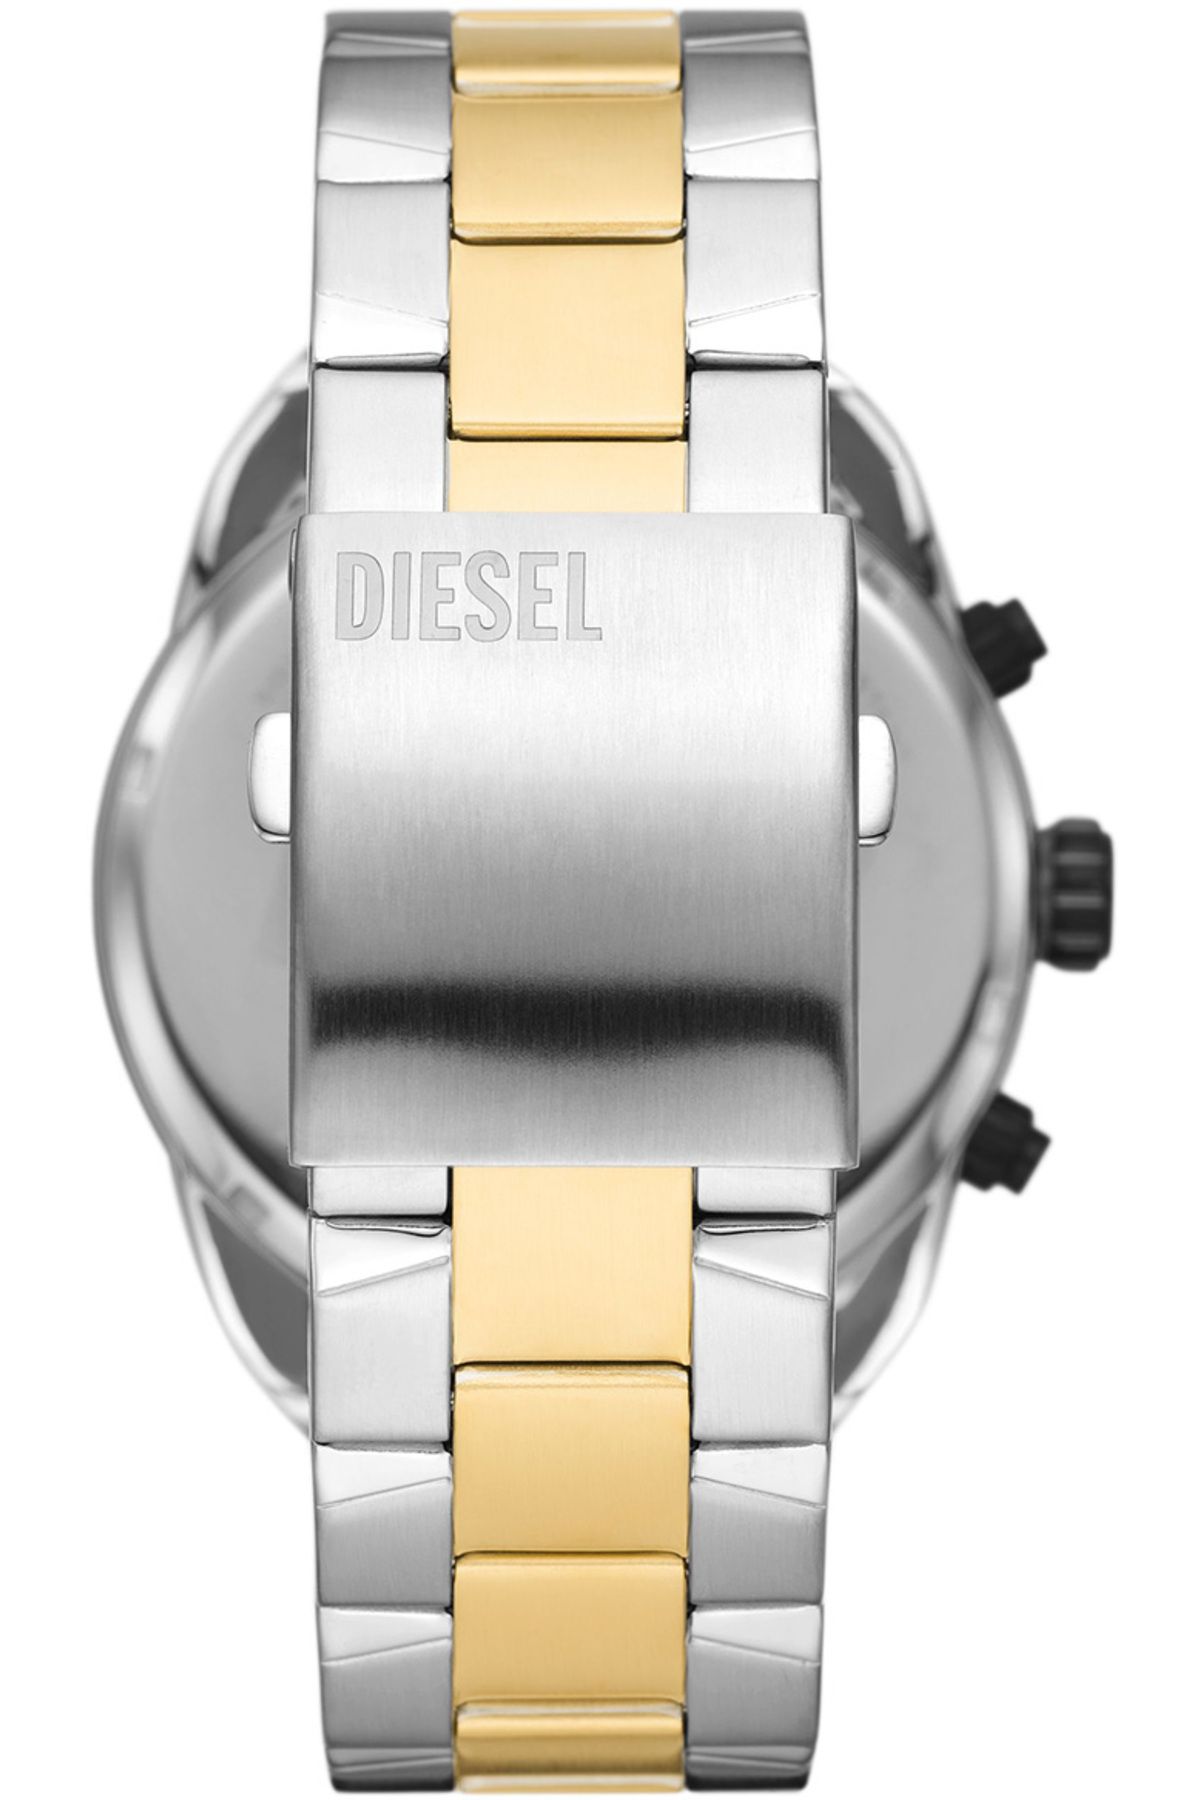 Diesel ساعت مچی مردانه DZ4627